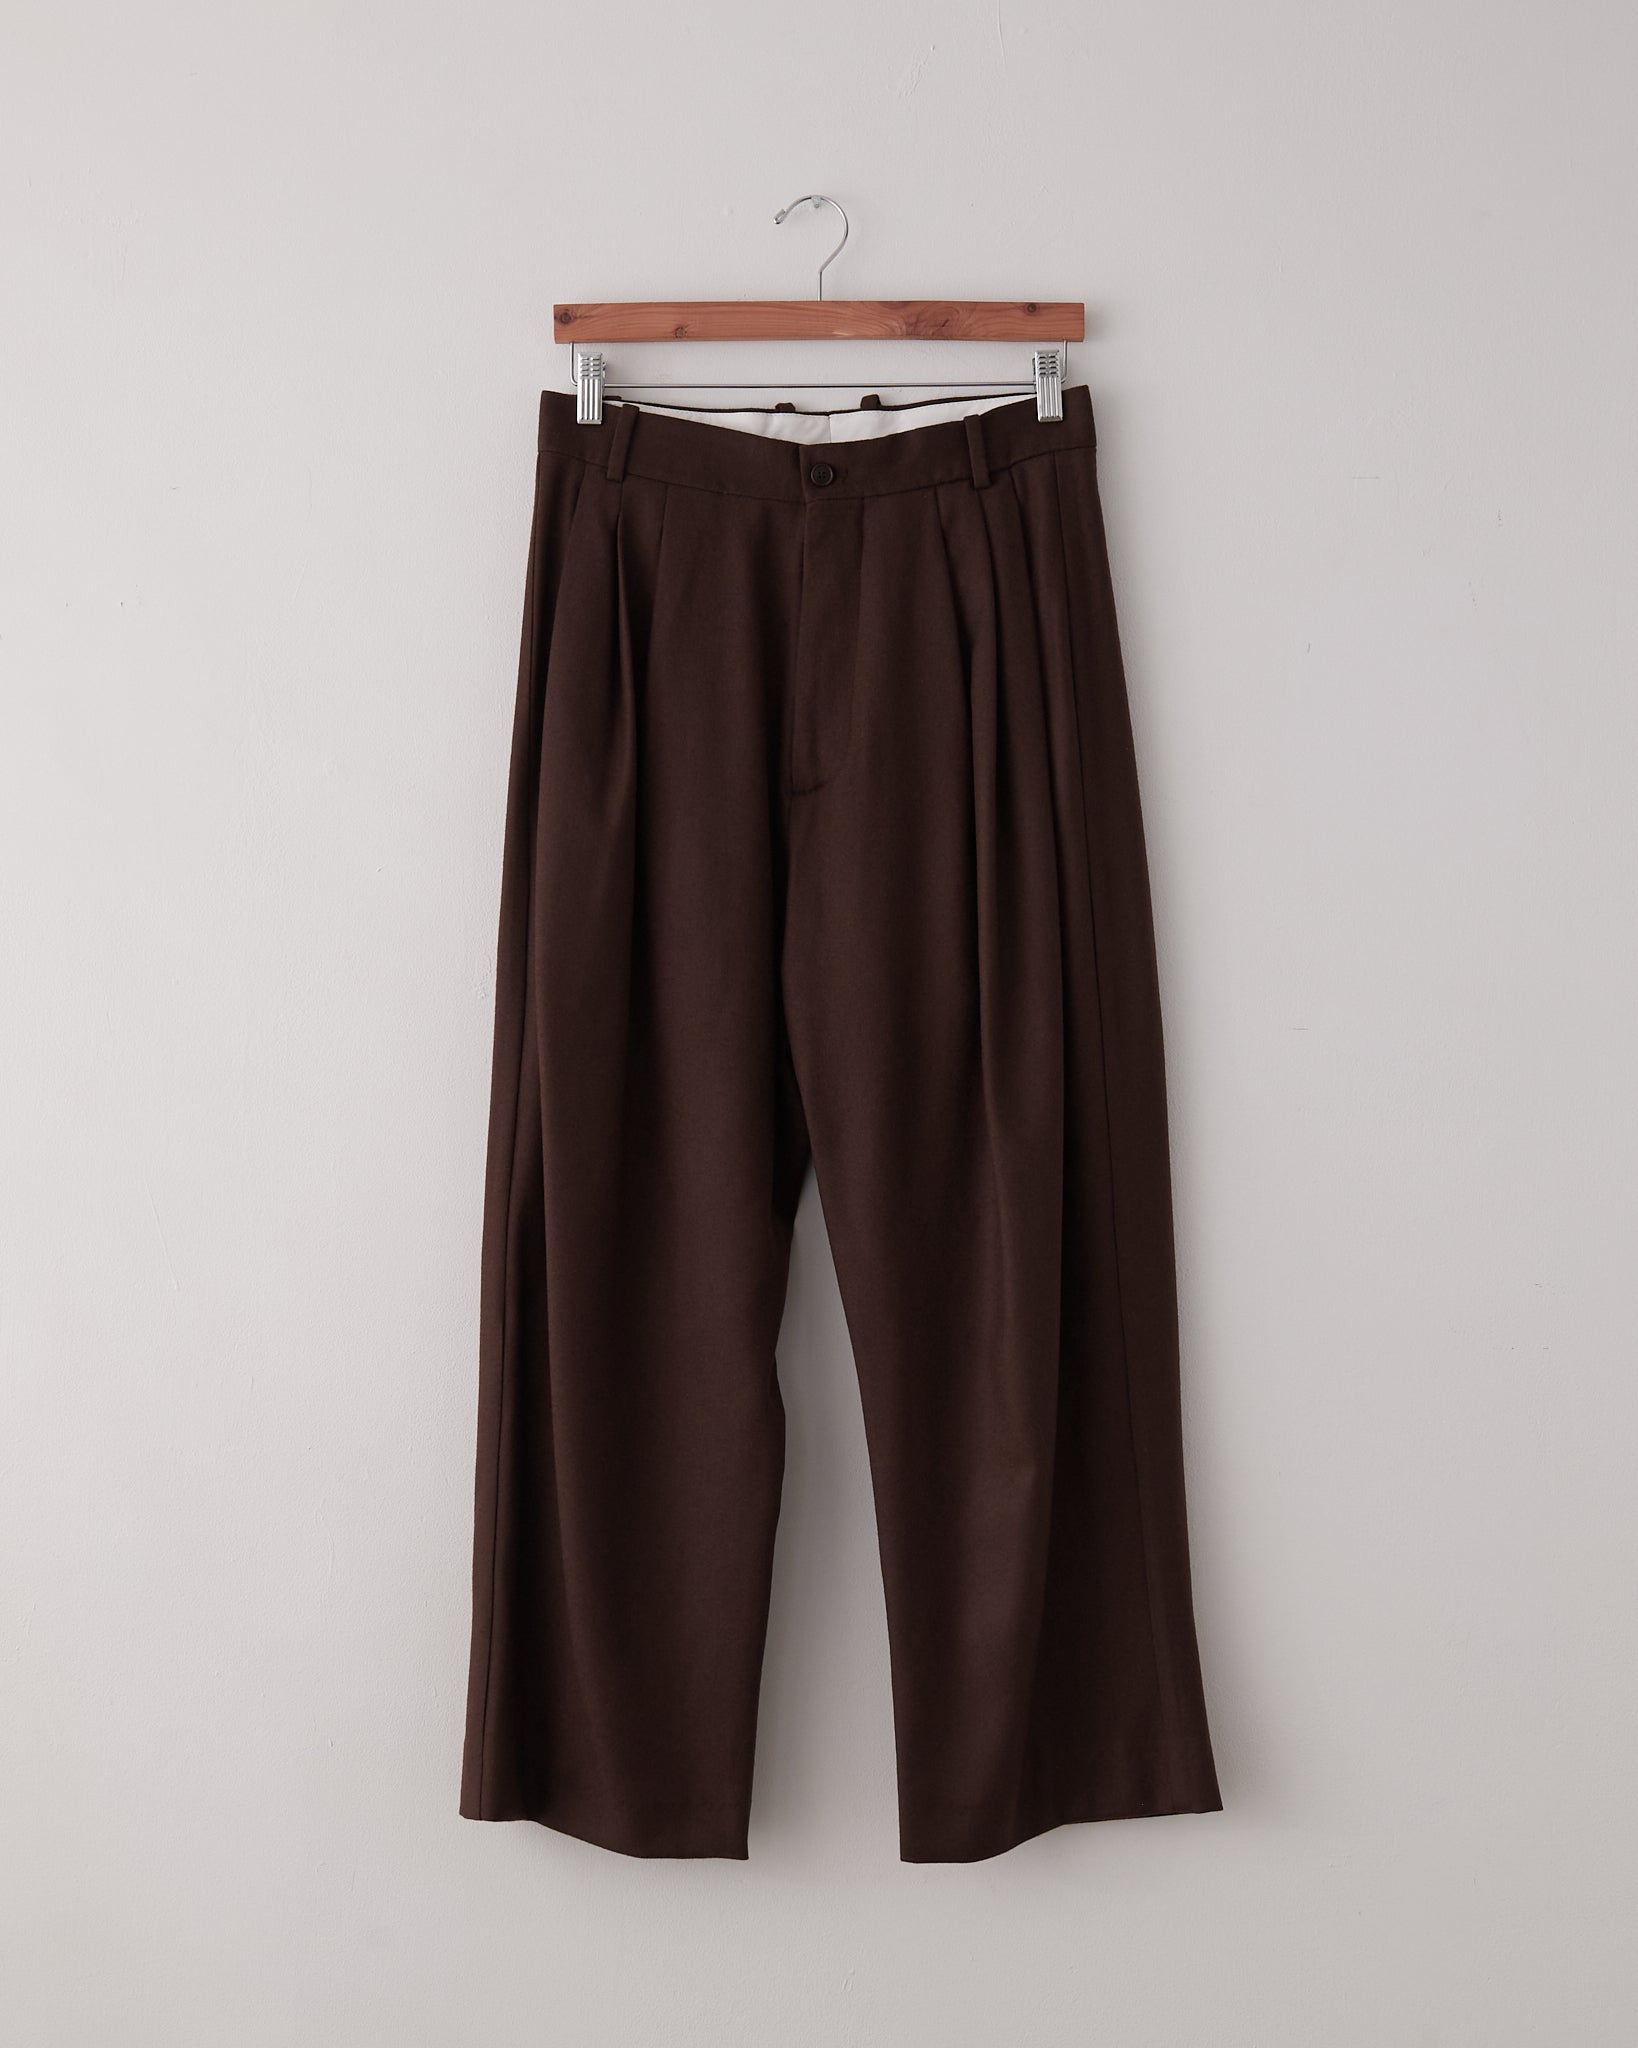 6 Pleat Pants, Brown